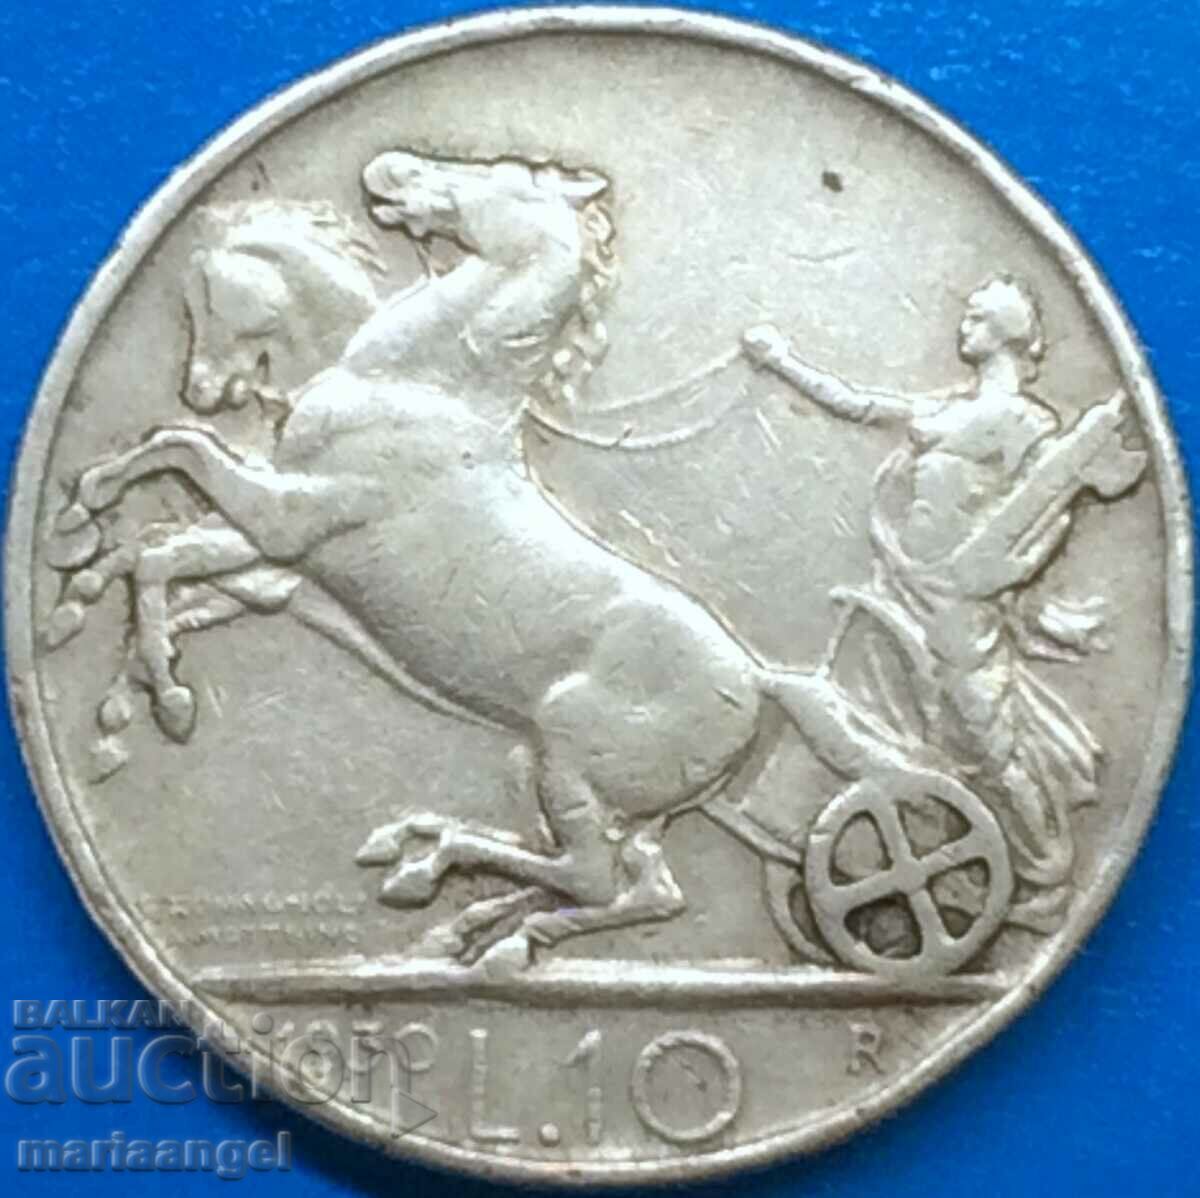 10 лири 1930 Италия Виктор Емануил сребро - рядка година!